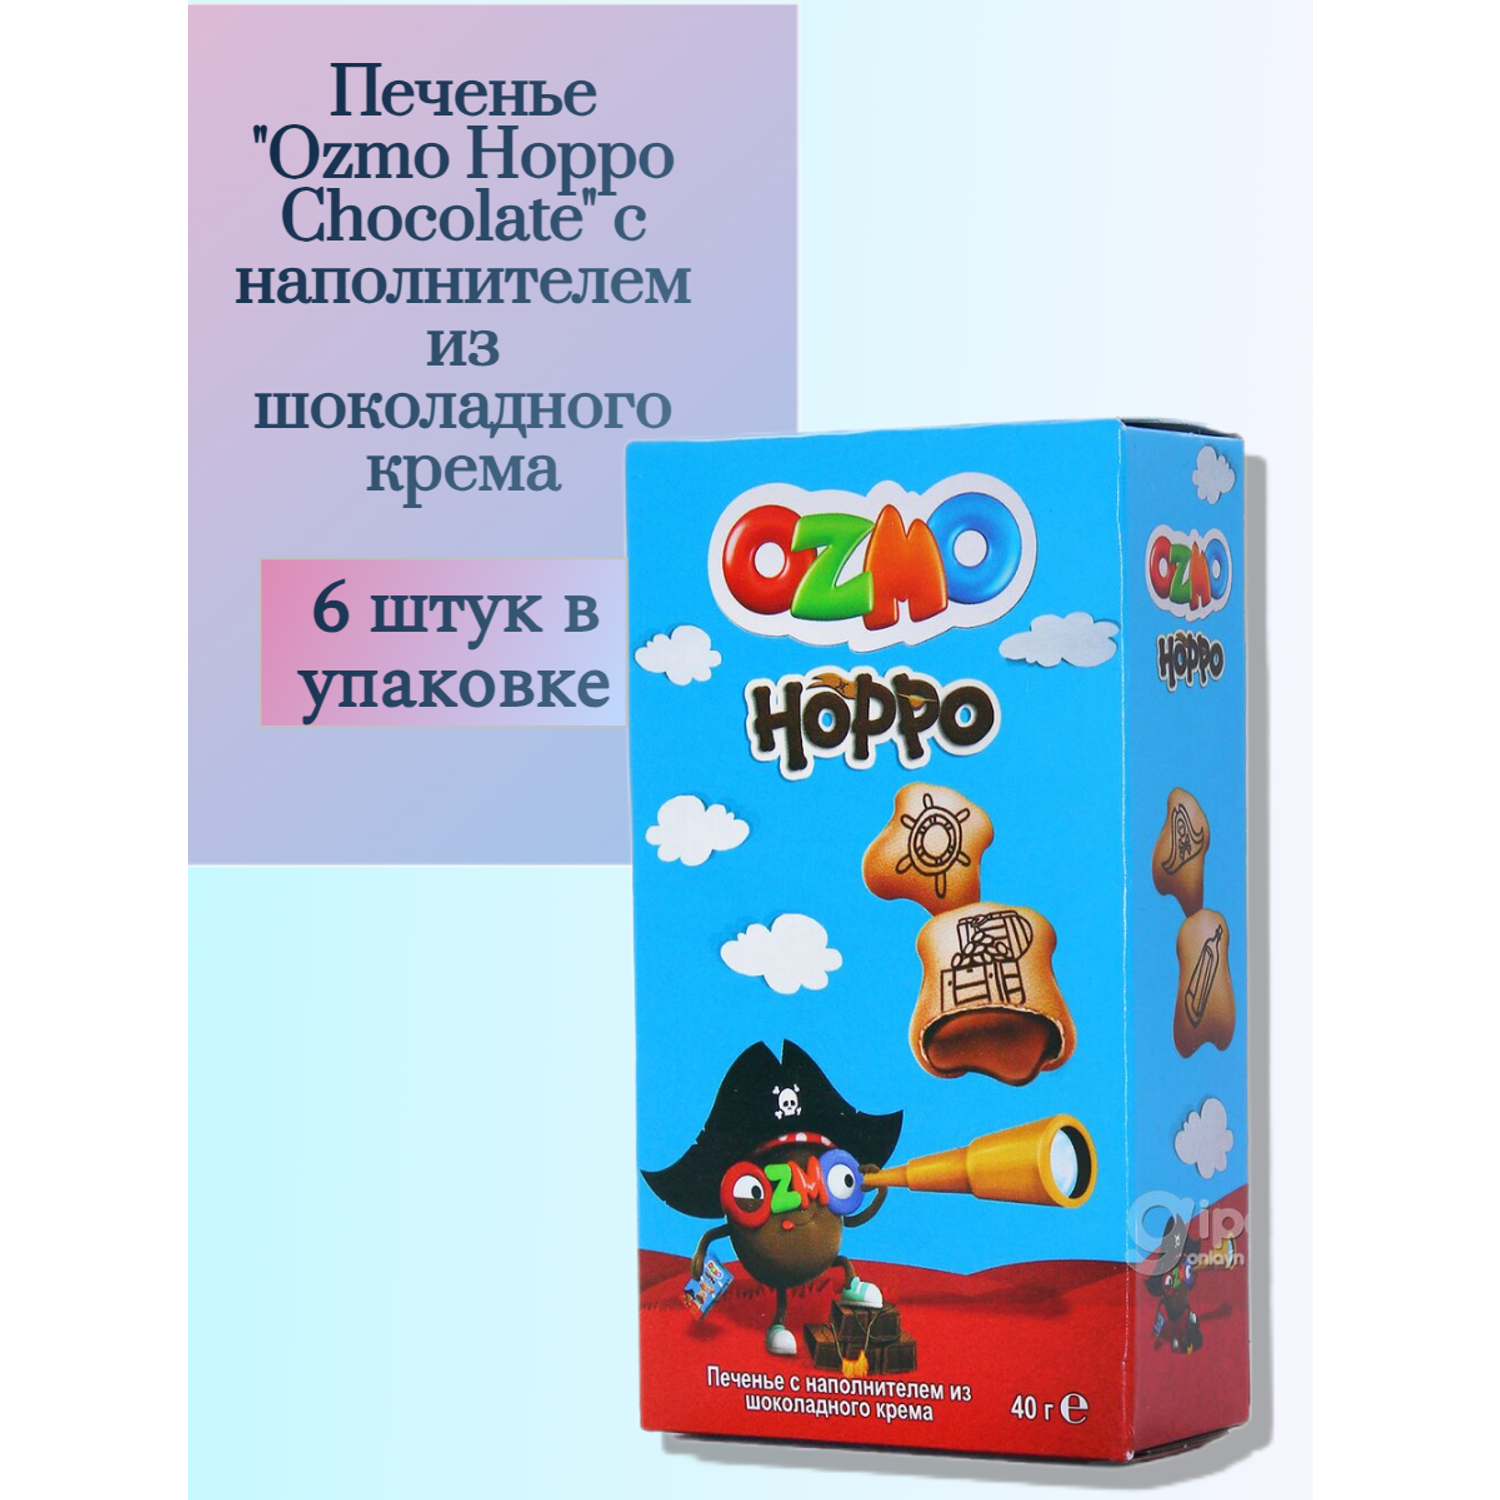 Печенье Solen Ozmo Hoppo Chocolate с наполнителем из шоколадного крема 6 шт. - фото 1